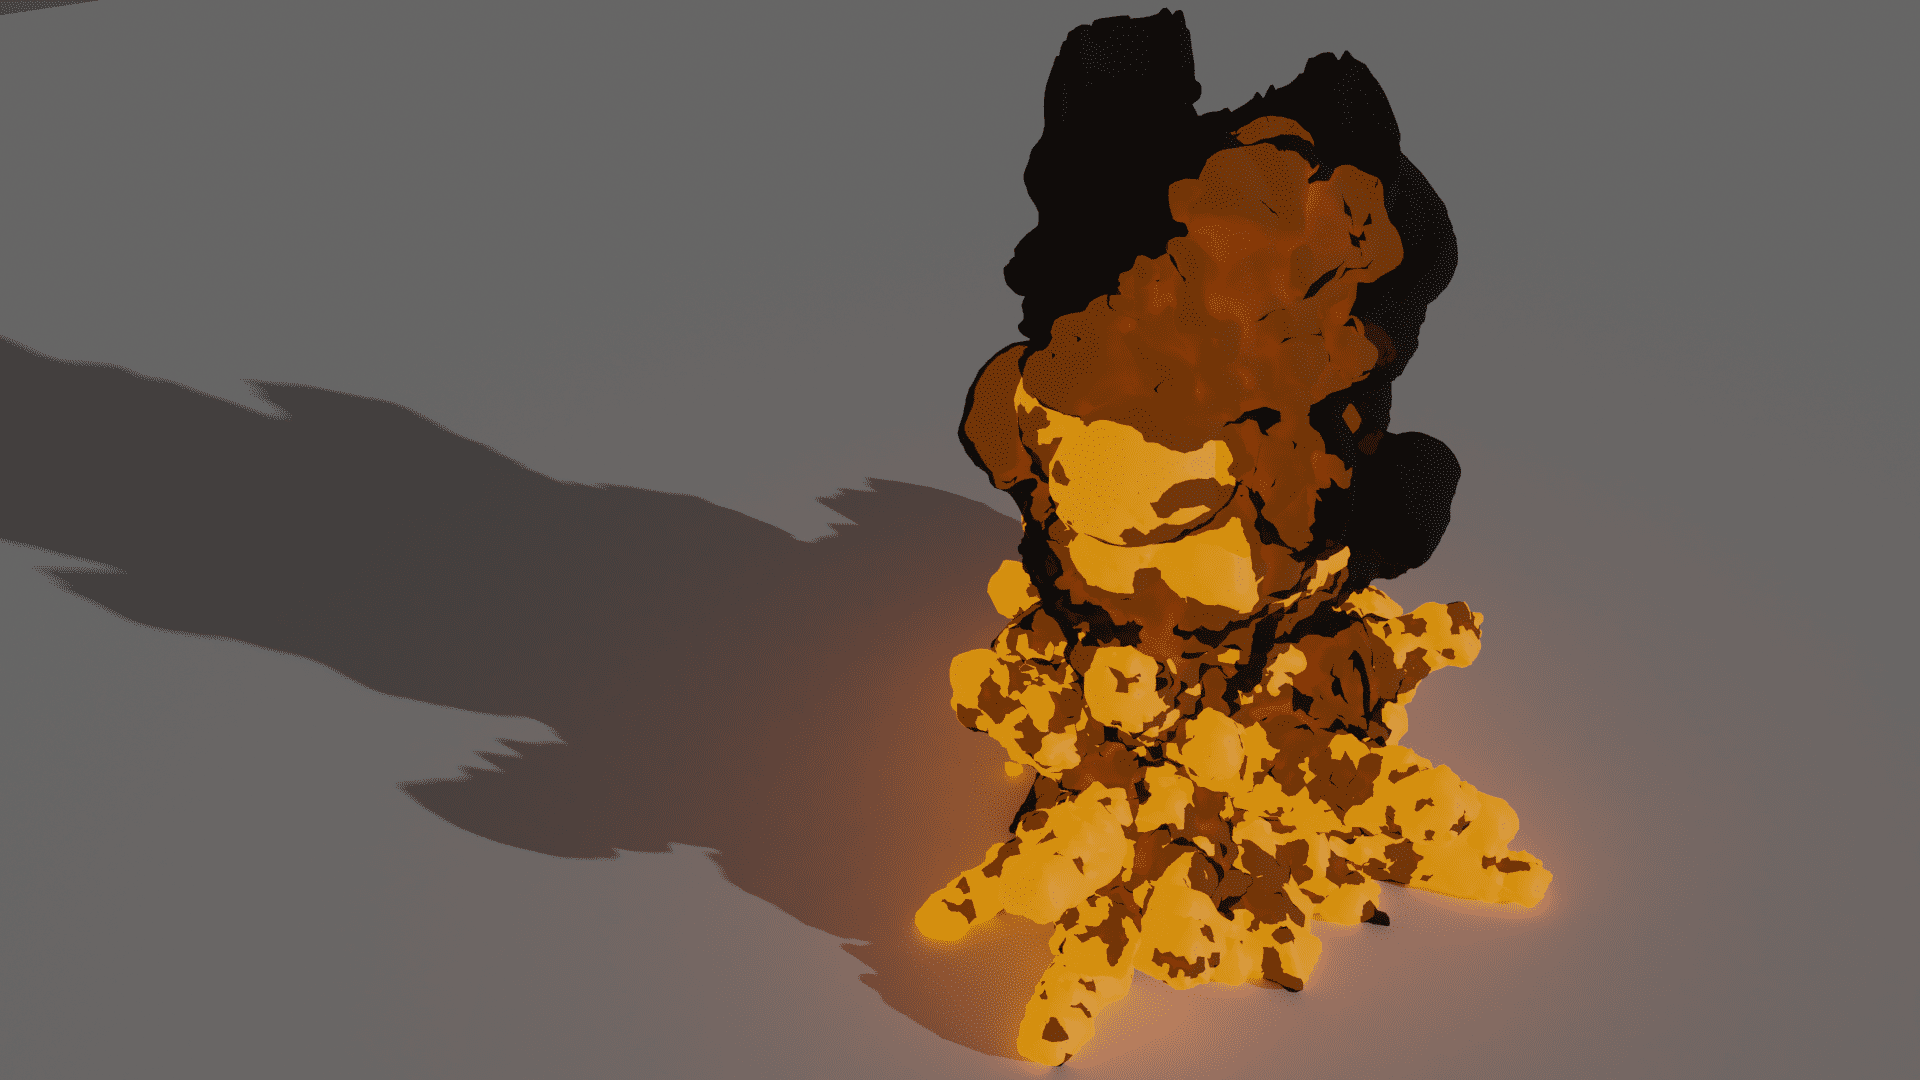 [Blender 2.9] 炎や煙をメッシュオブジェクト化 [ボリュームのメッシュ化モディファイアー]